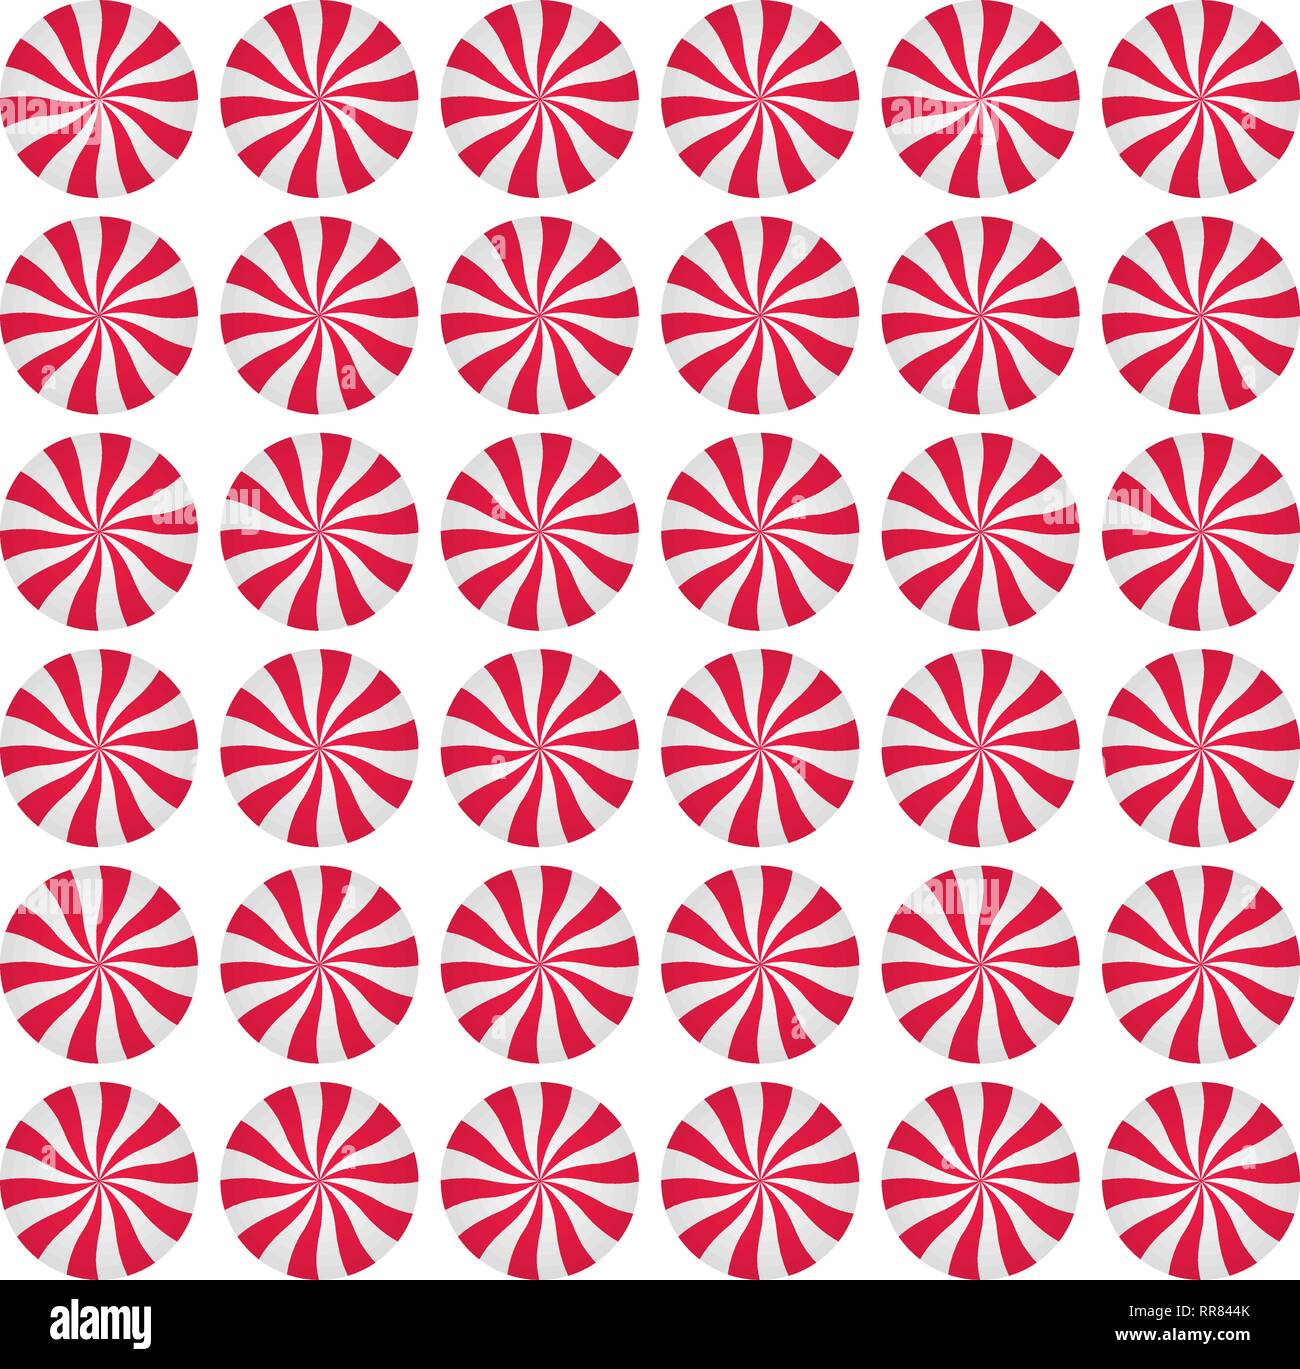 Pfefferminze sahne Bonbons Hintergrund. Spirale Rot und Weiß wiederholt. Sweet Shop Design. Vector Illustration. Stock Vektor